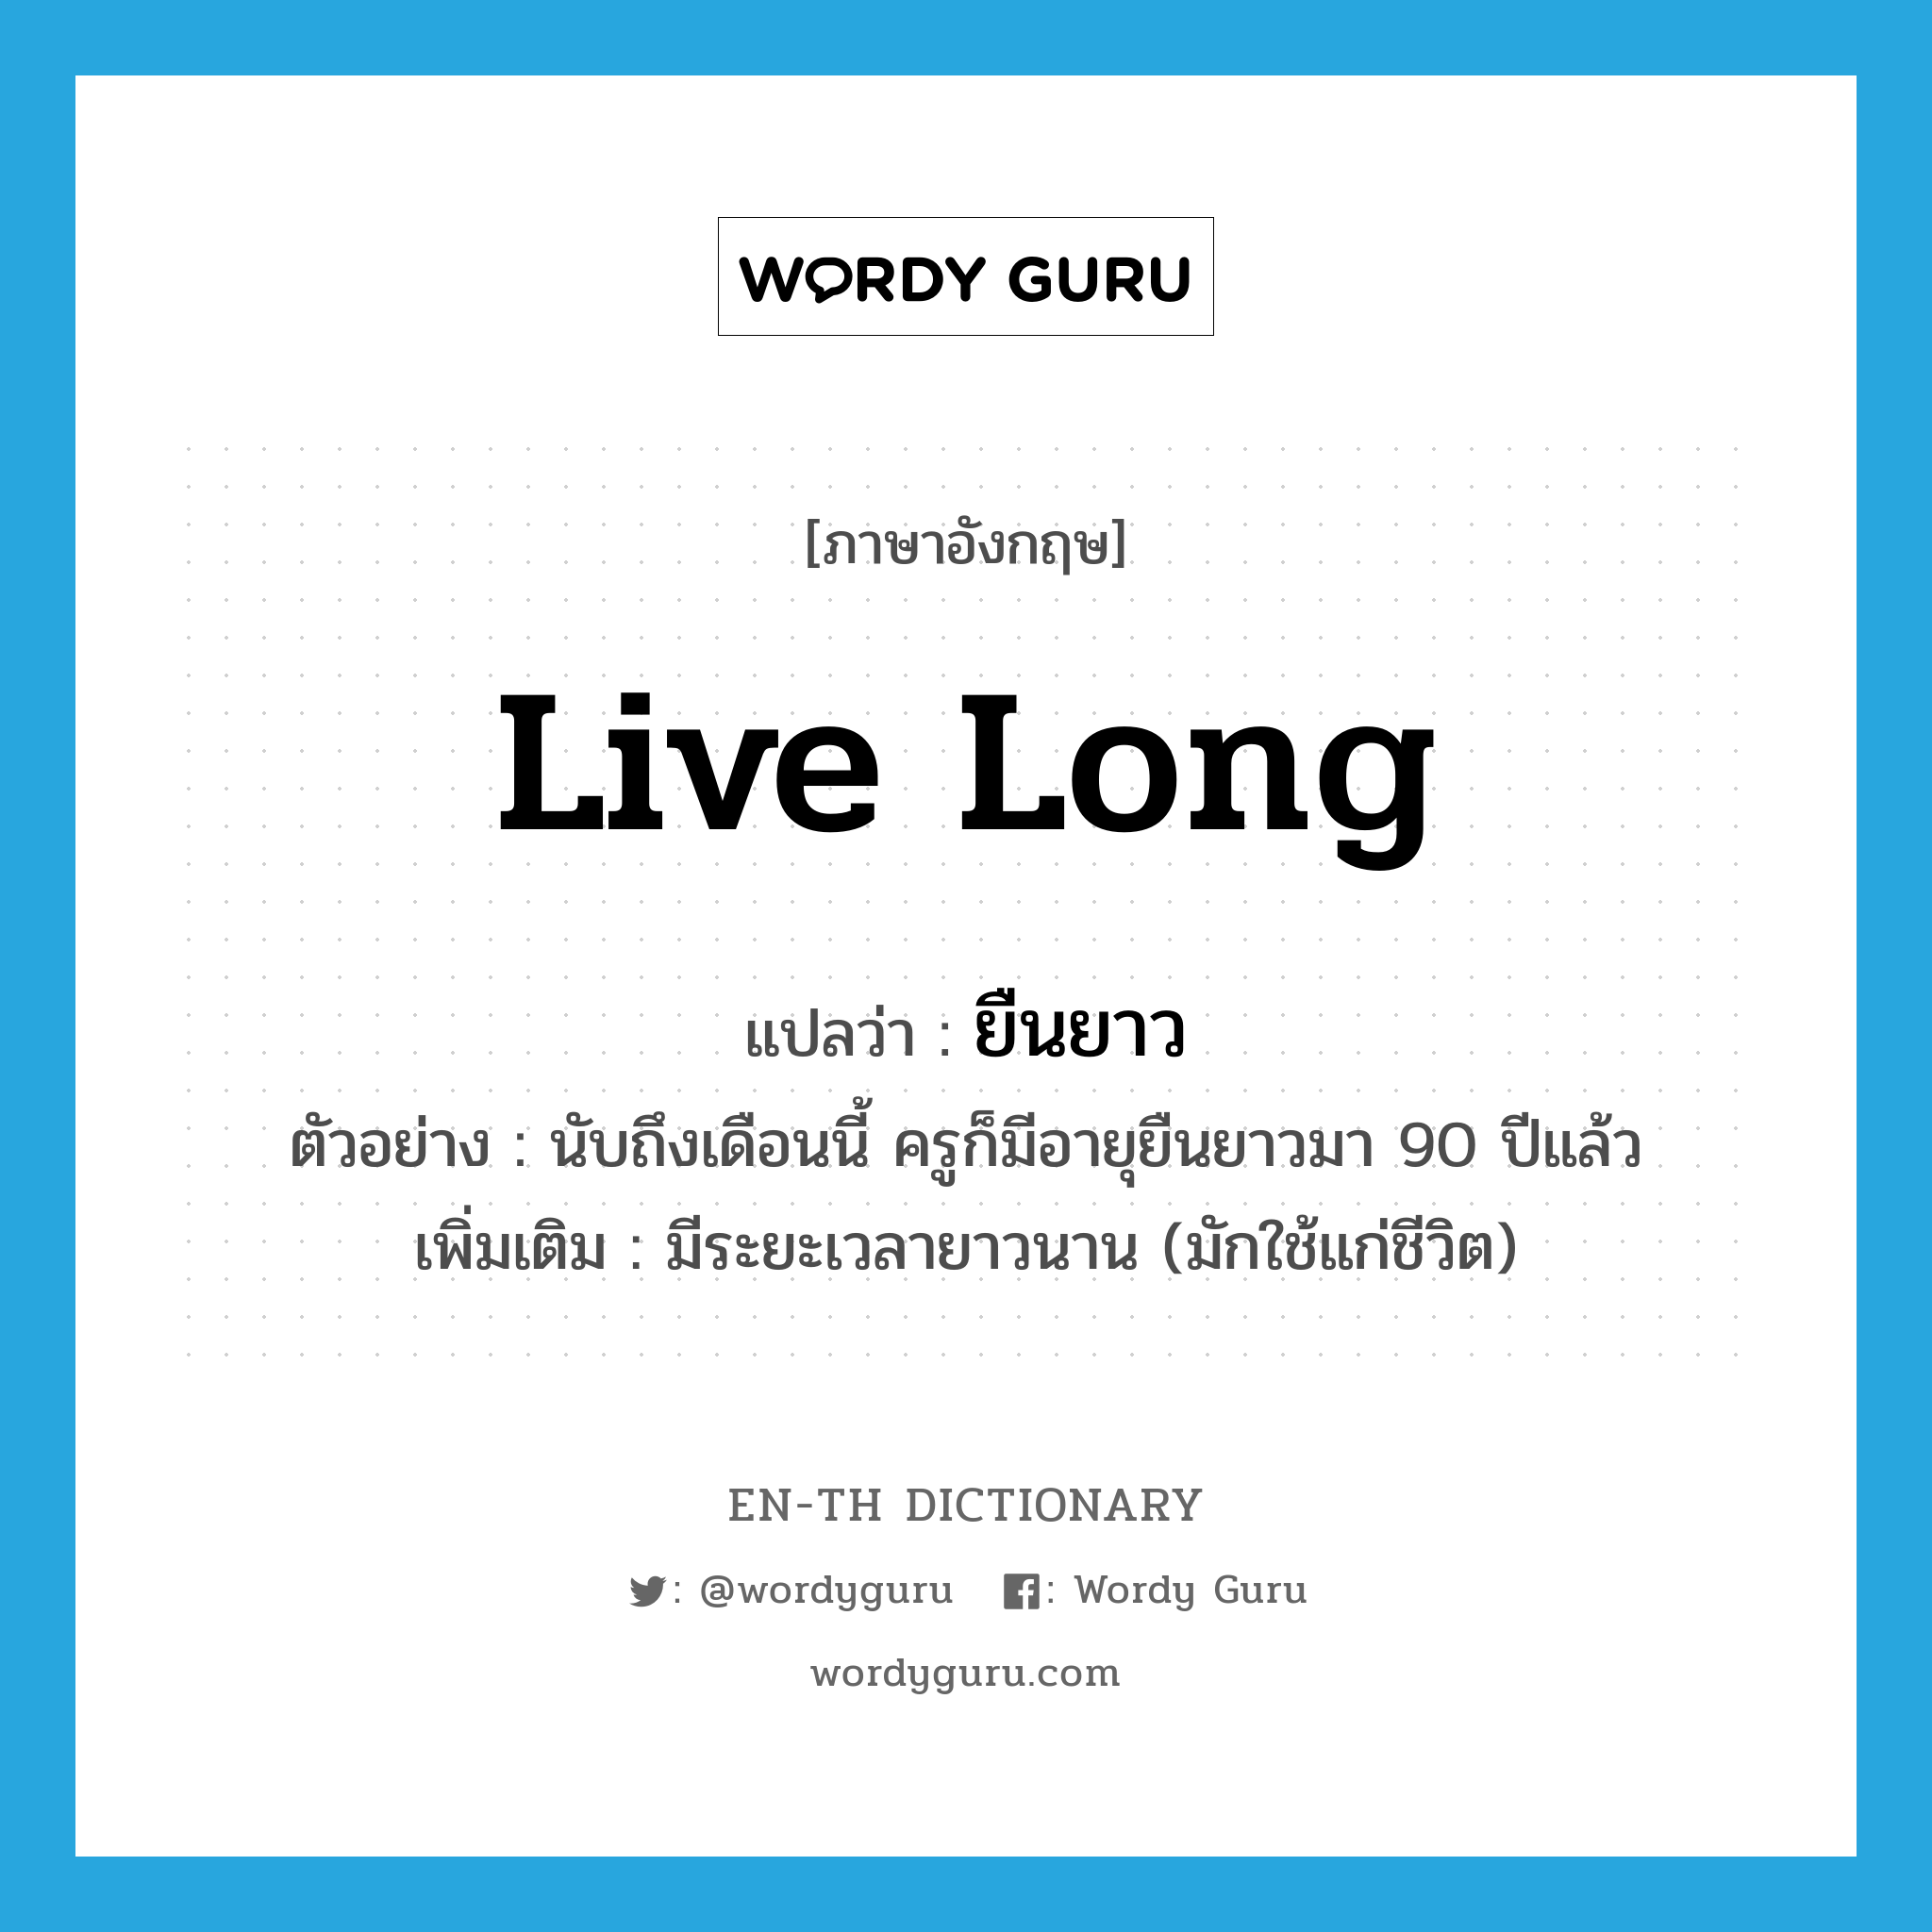 live long แปลว่า?, คำศัพท์ภาษาอังกฤษ live long แปลว่า ยืนยาว ประเภท V ตัวอย่าง นับถึงเดือนนี้ ครูก็มีอายุยืนยาวมา 90 ปีแล้ว เพิ่มเติม มีระยะเวลายาวนาน (มักใช้แก่ชีวิต) หมวด V